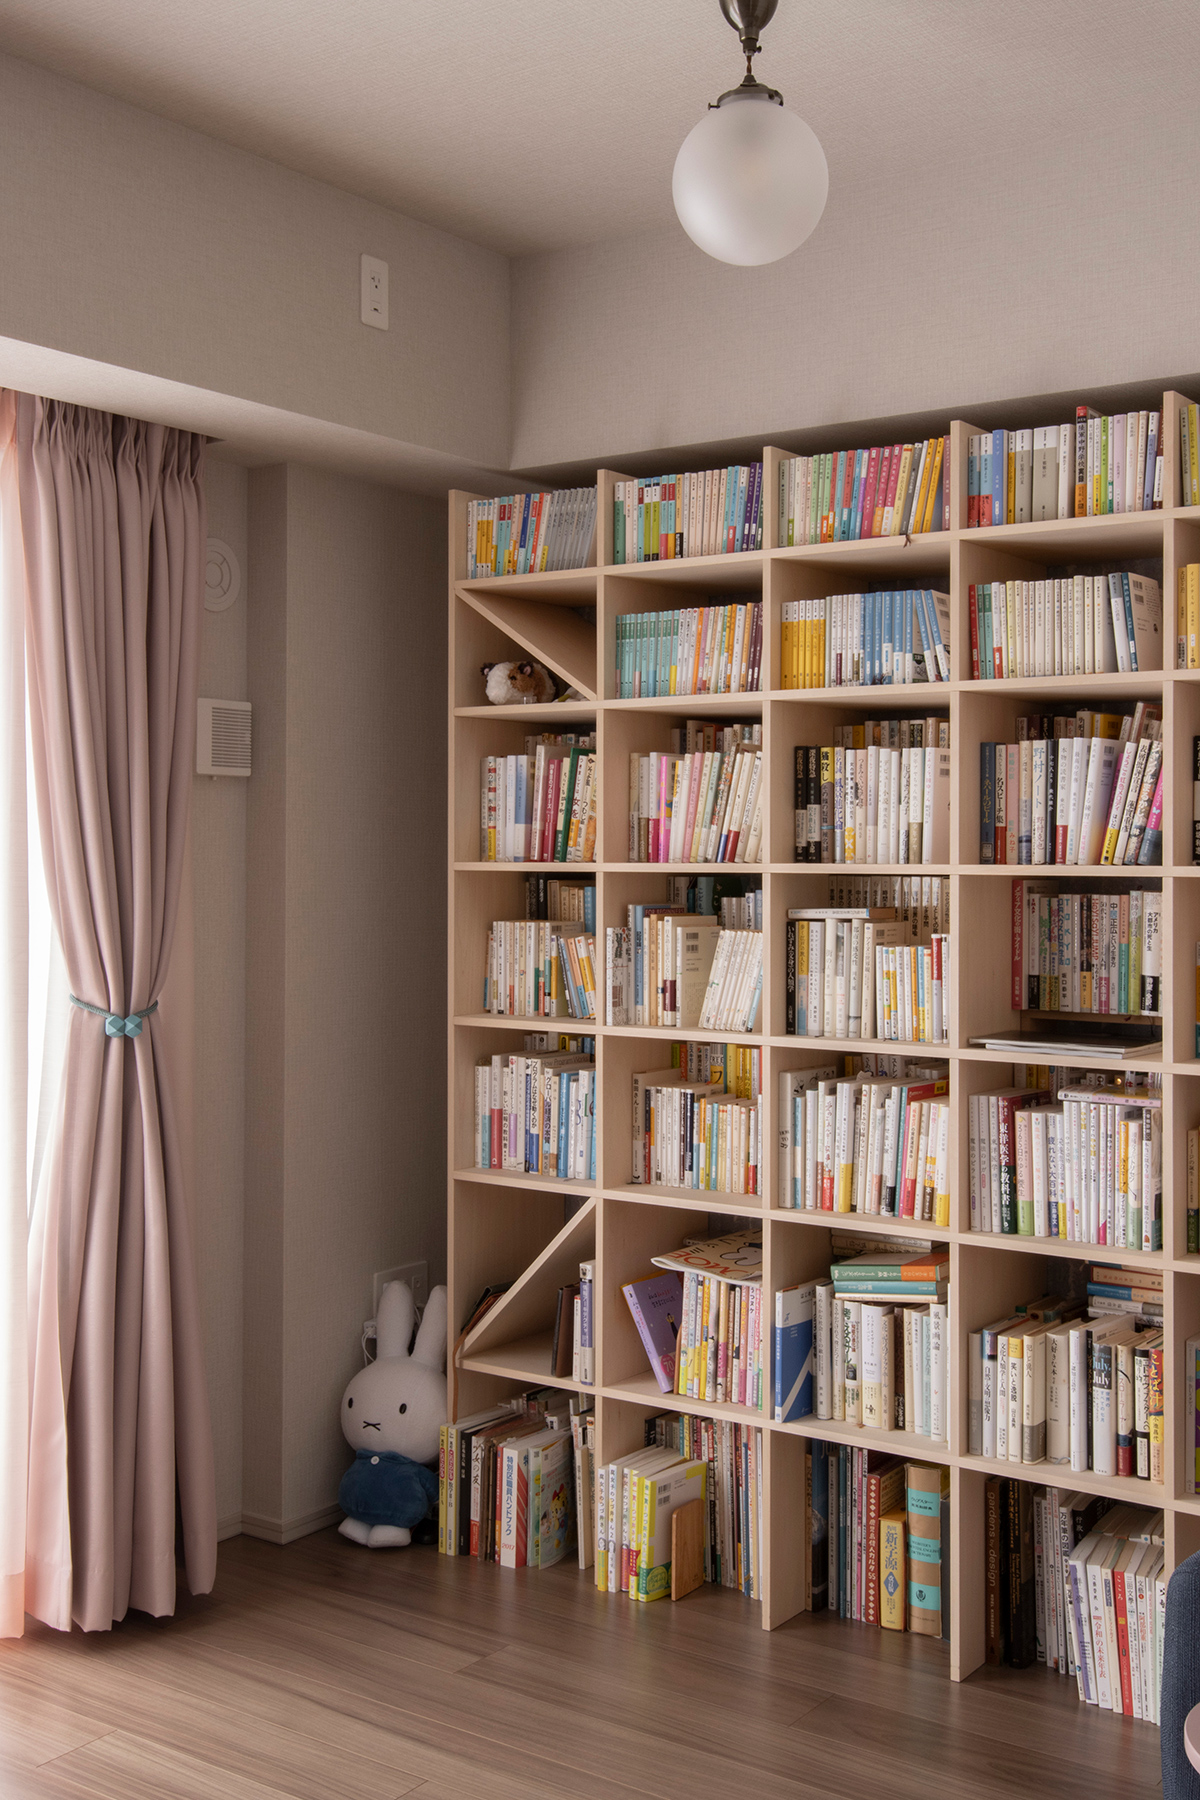 可動間仕切りで仕切れる読書空間
壁一面の本棚